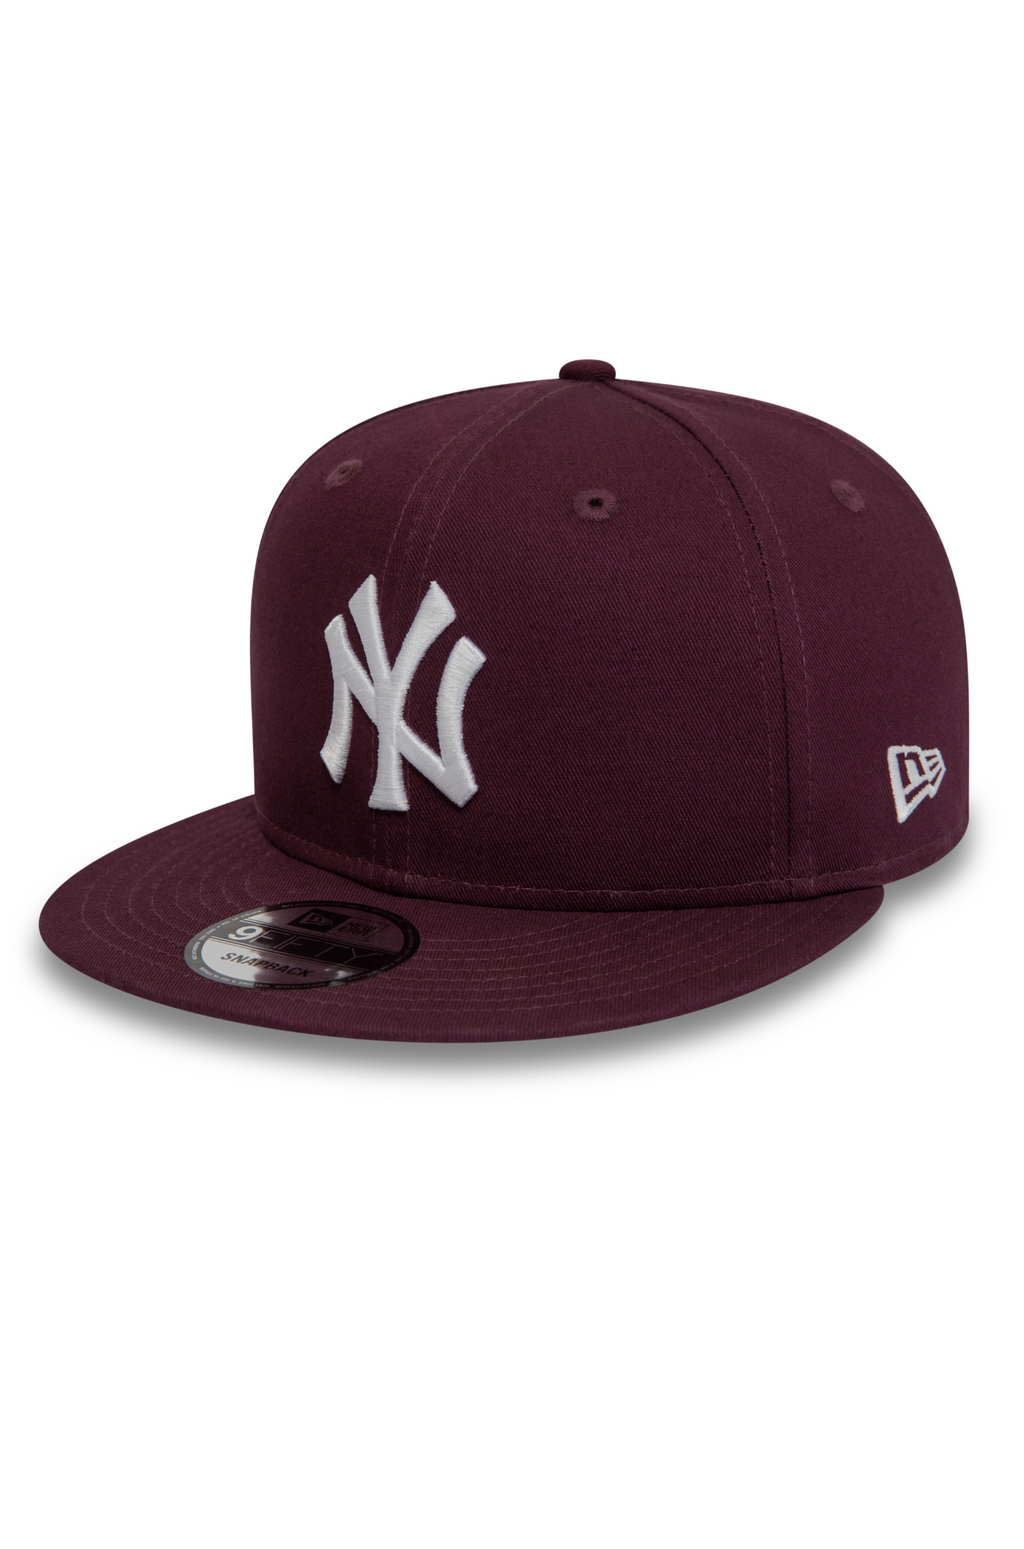 New Era New York MLB 9Fifty Cap Wine Red